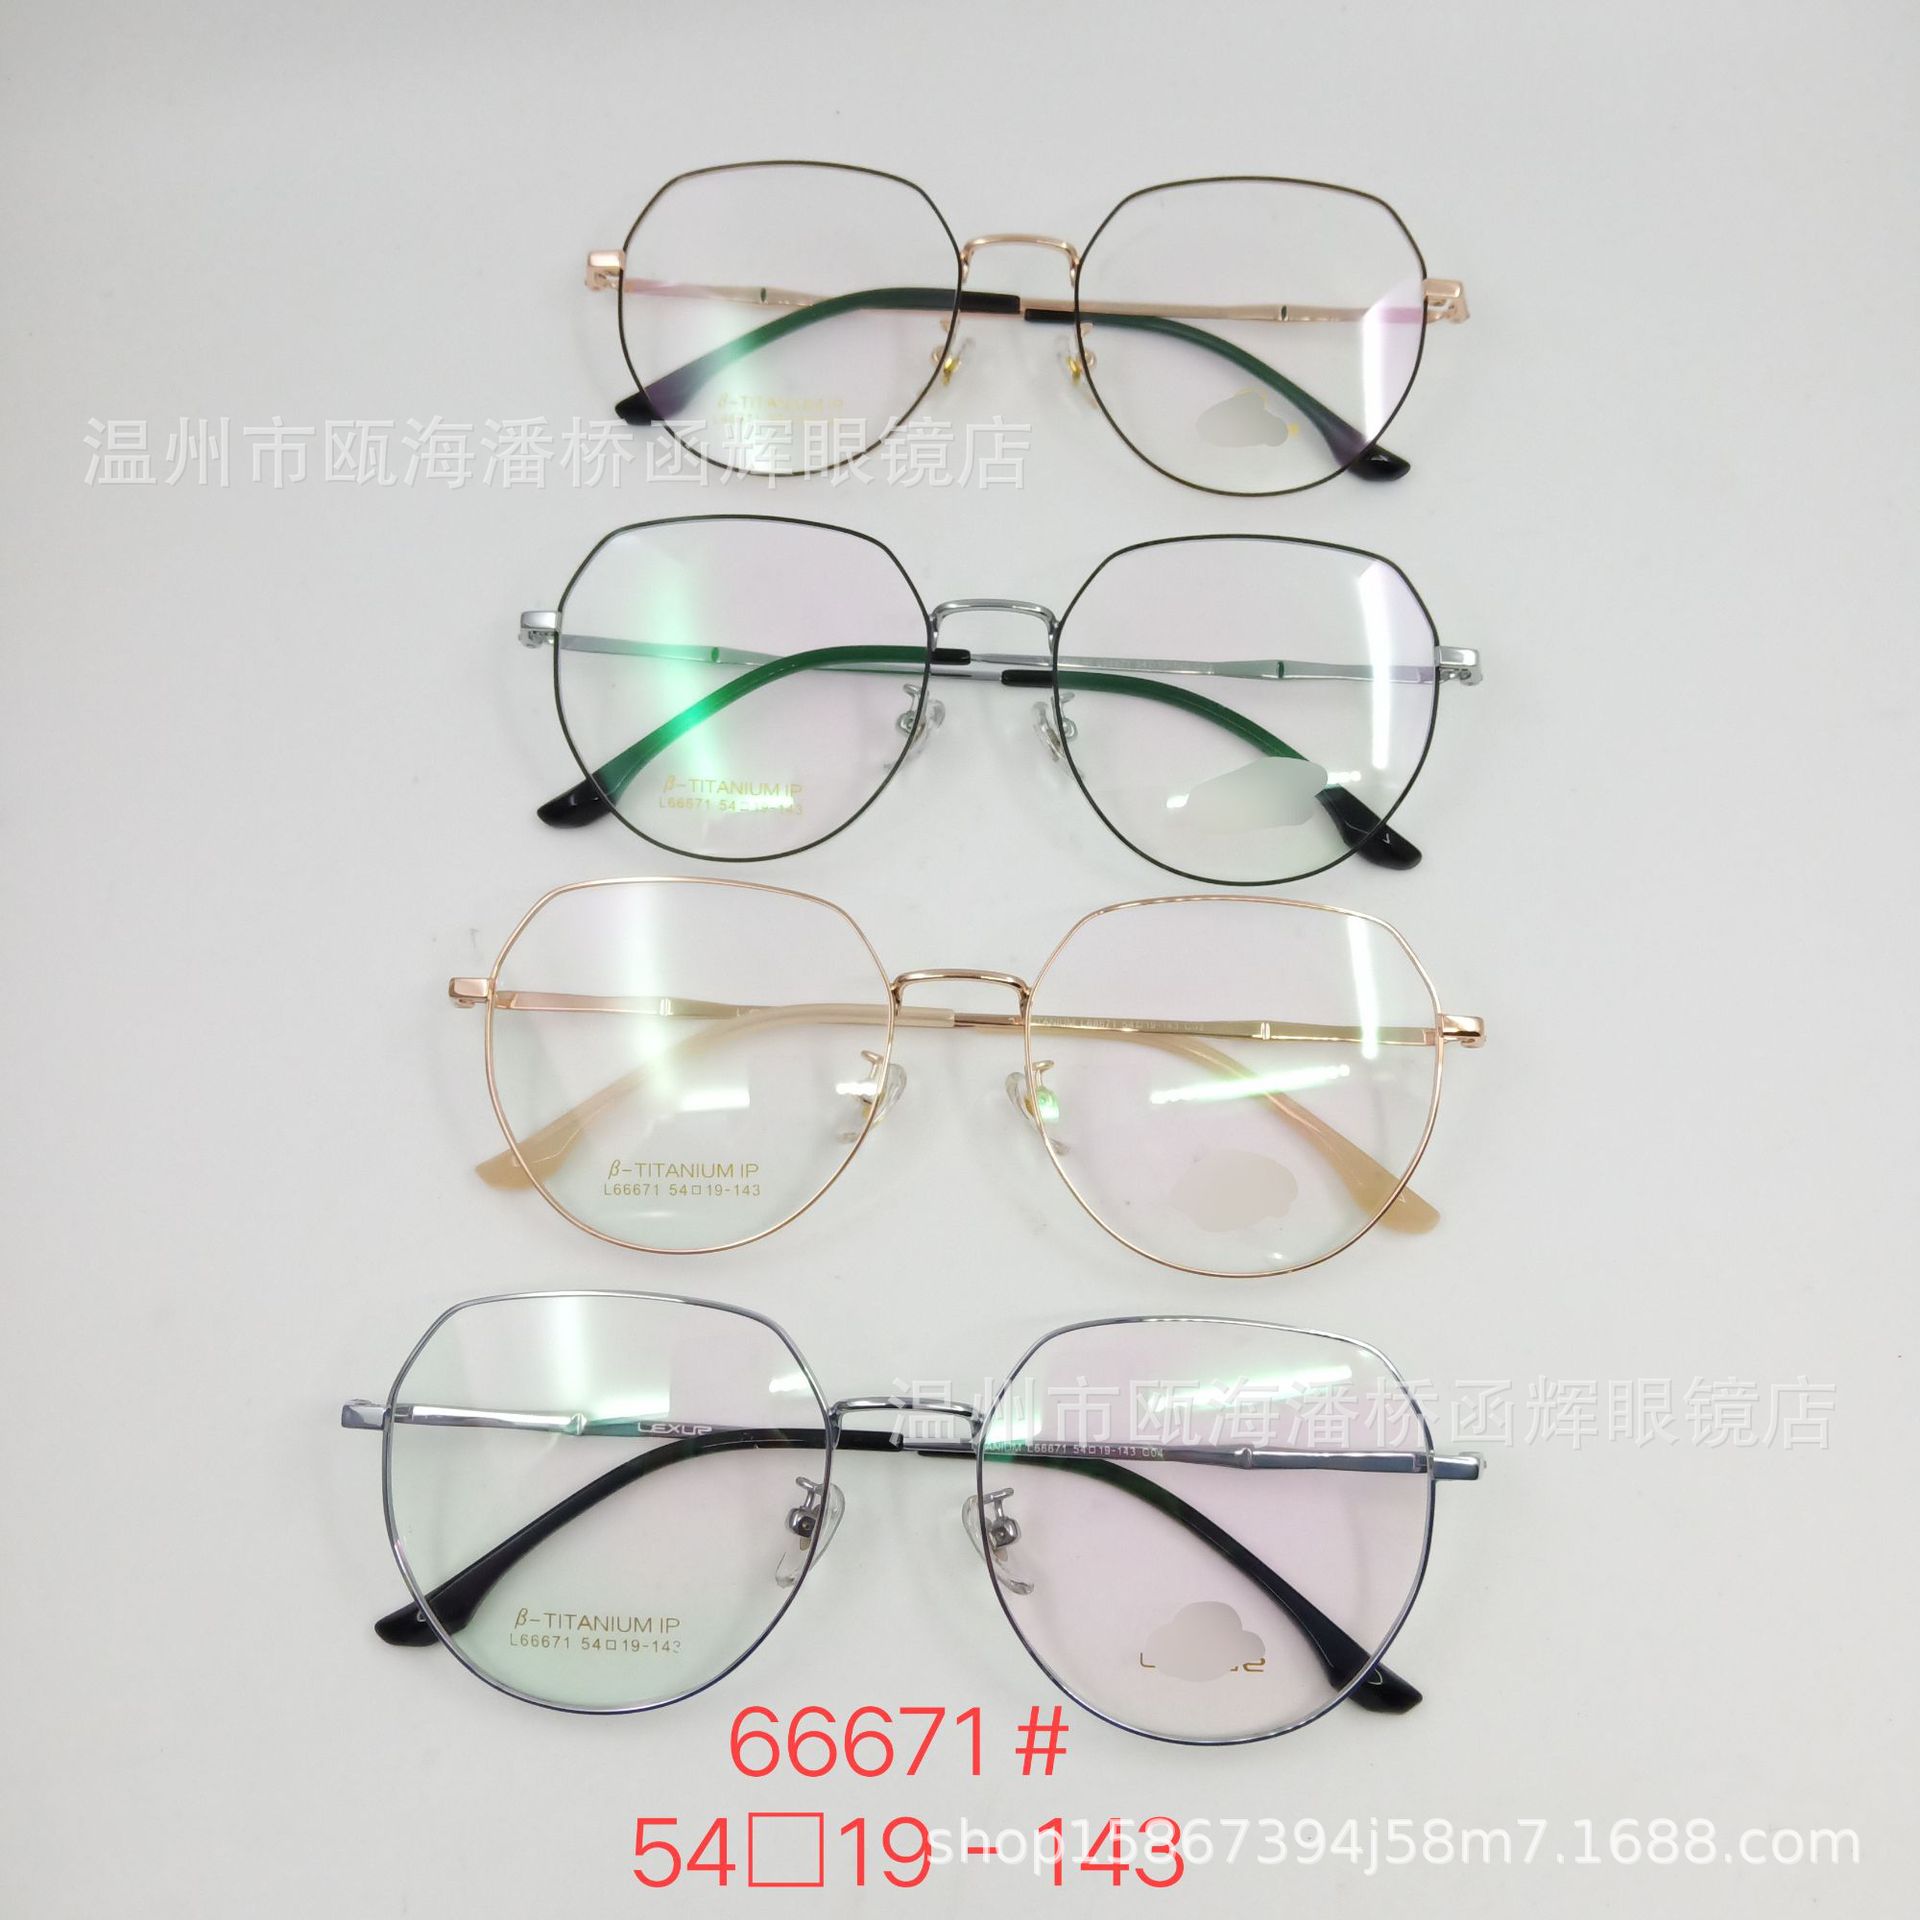 2021新款b钛宽边眼镜框男女光学镜架复古圆框方形双色